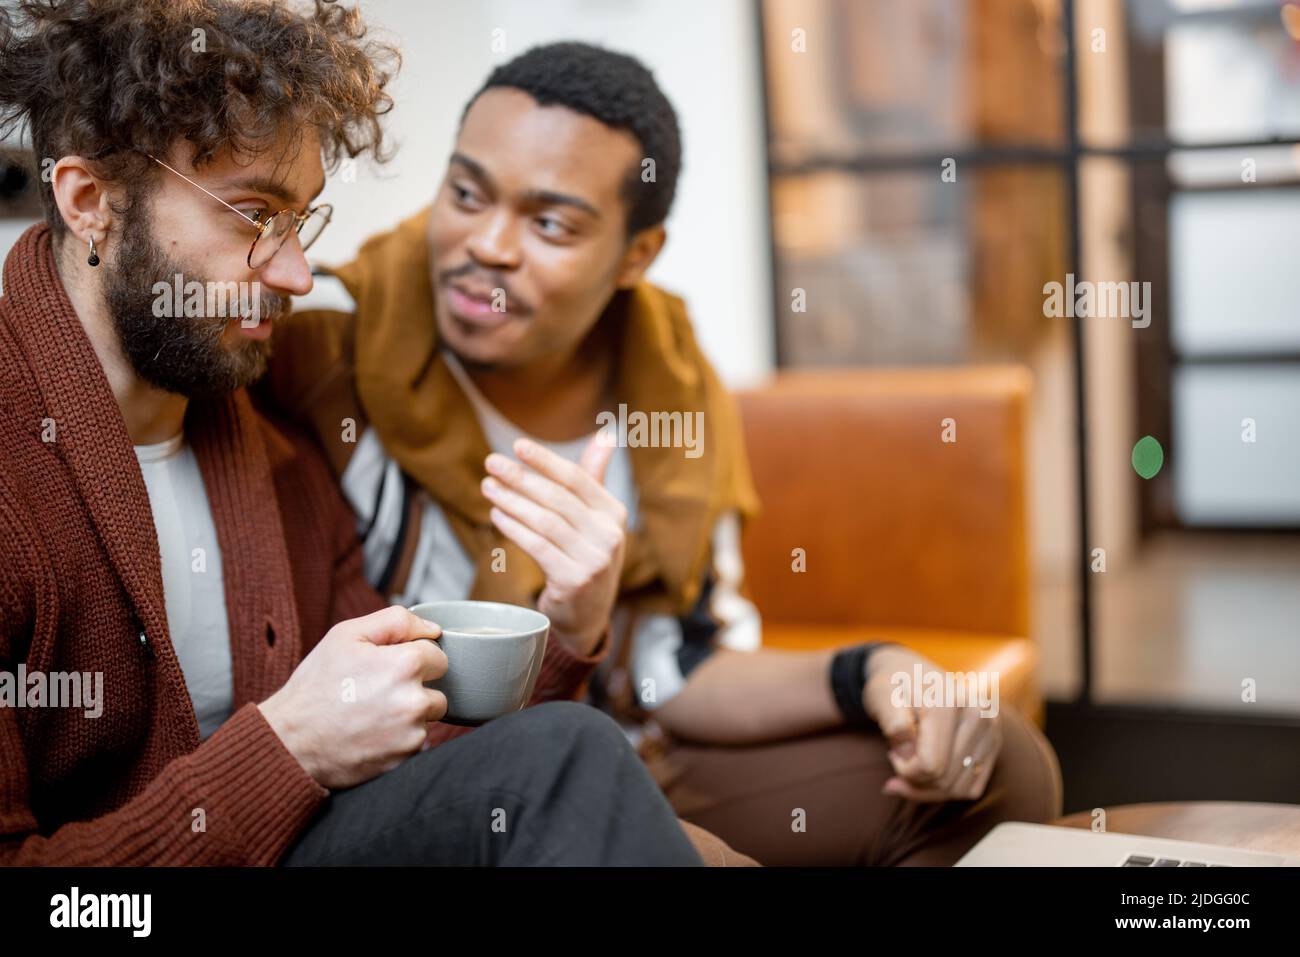 Un couple gay masculin parle sur un canapé à la maison Banque D'Images